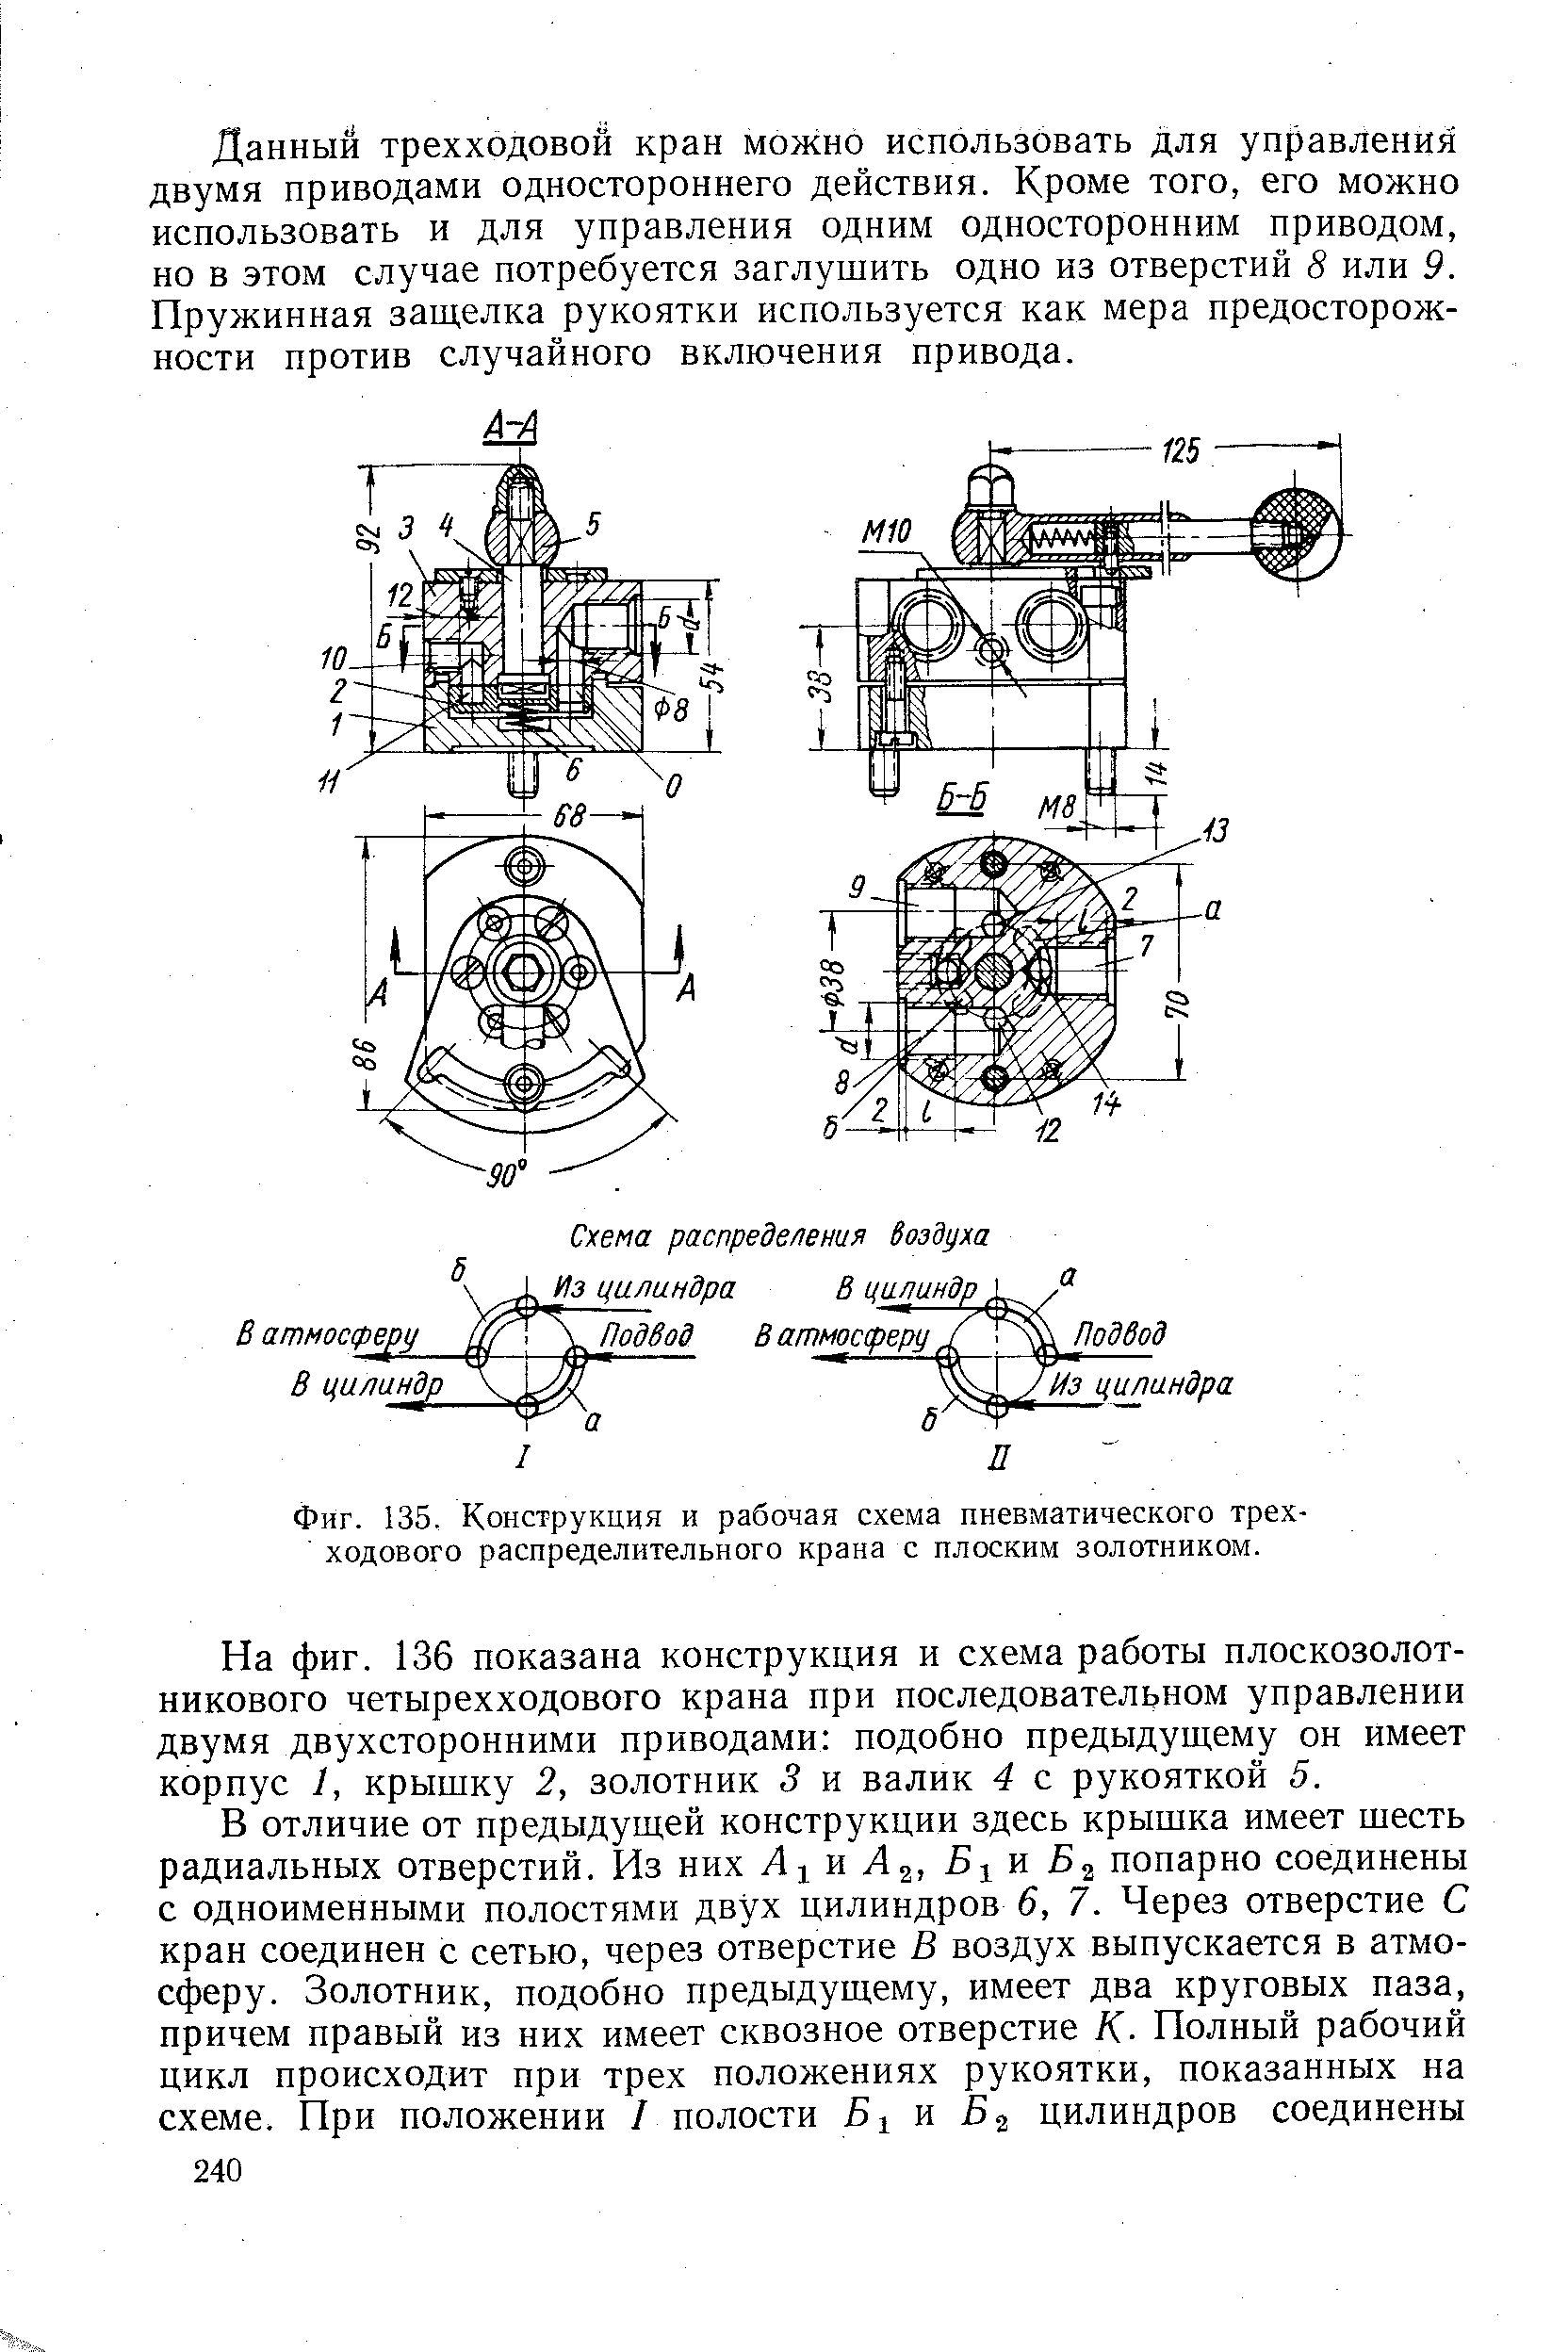 Фиг. 135. Конструкция и рабочая схема пневматического трехходового распределительного крана с плоским золотником.
